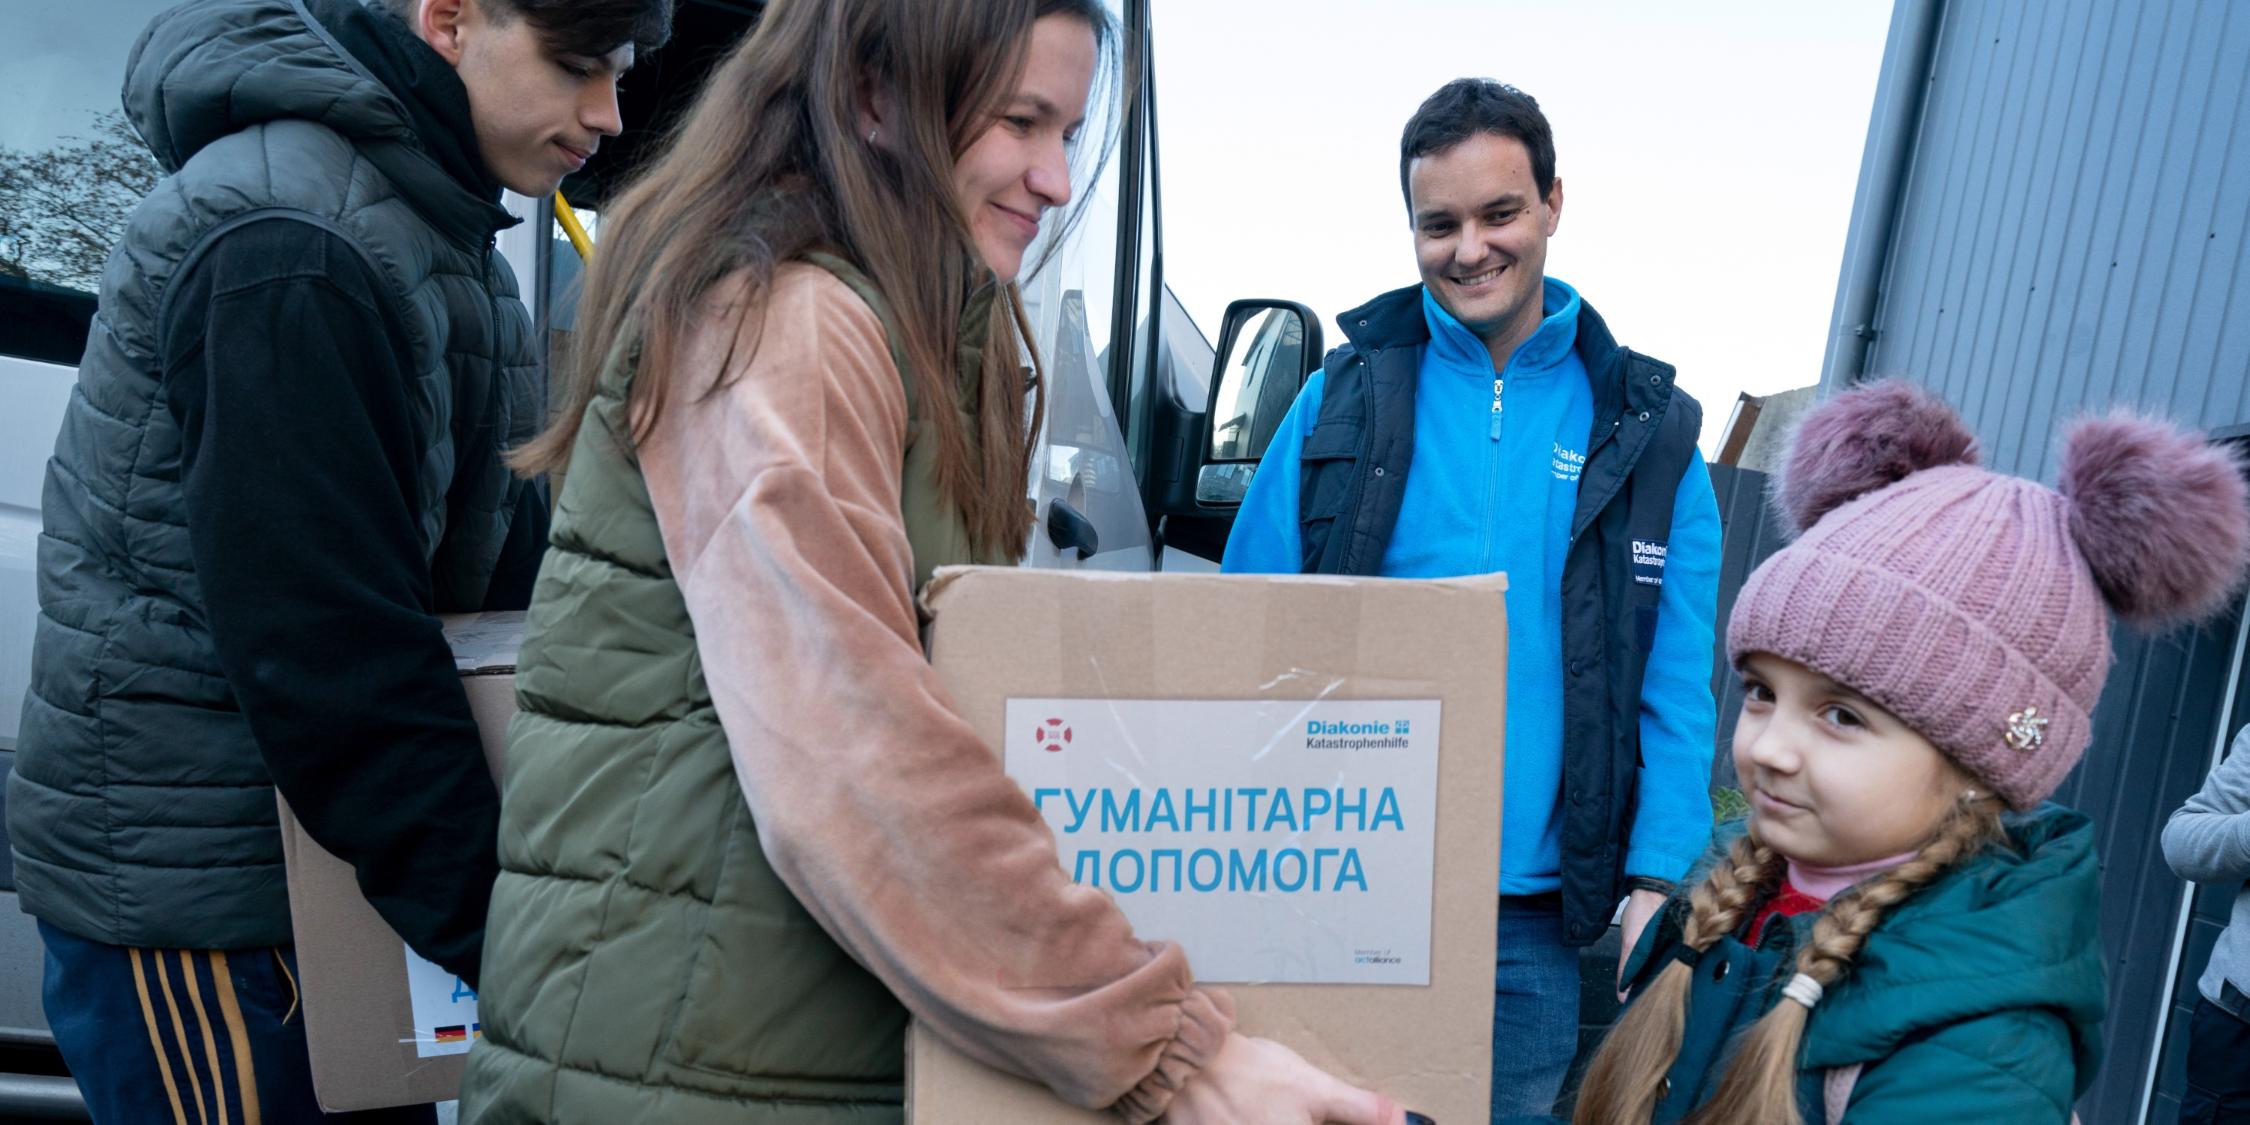 Diakonie Katastrophenhilfe in der Ukraine